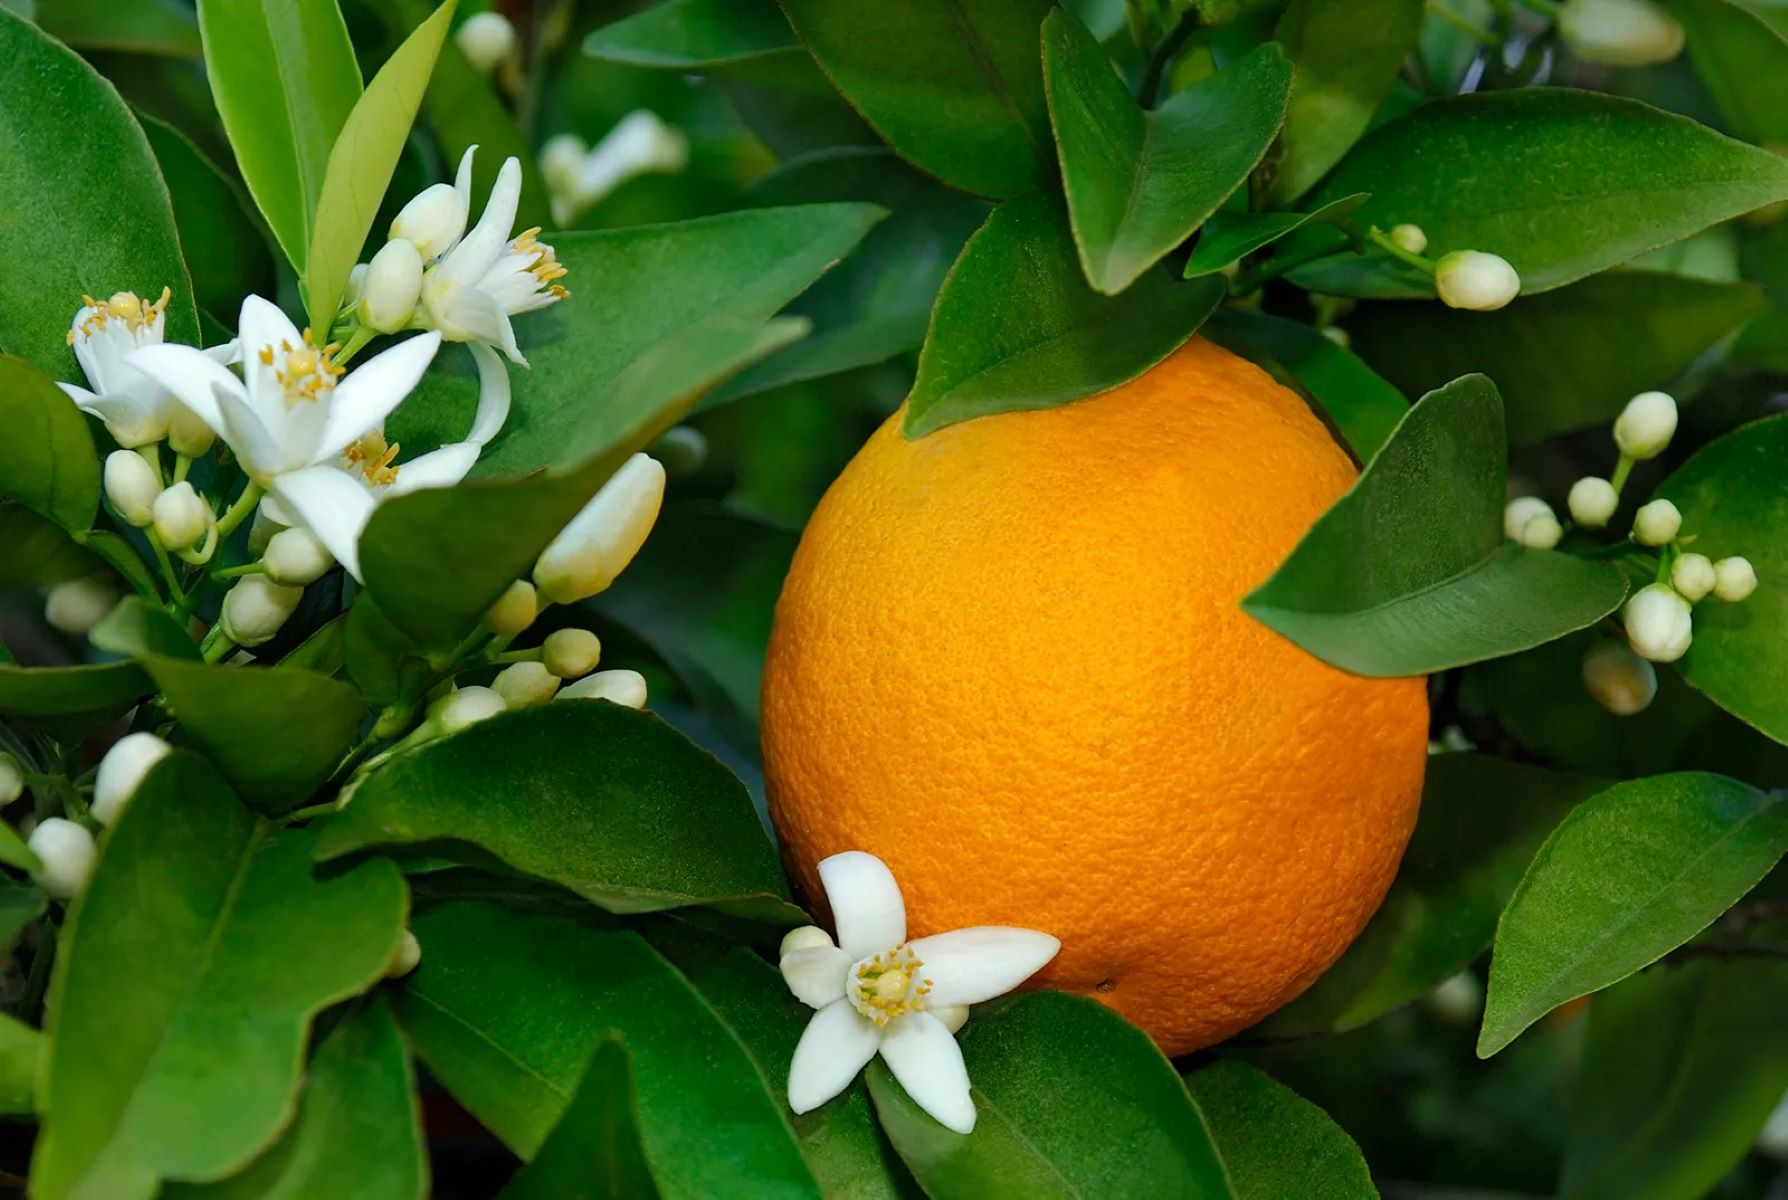 How To Plant Orange Seeds